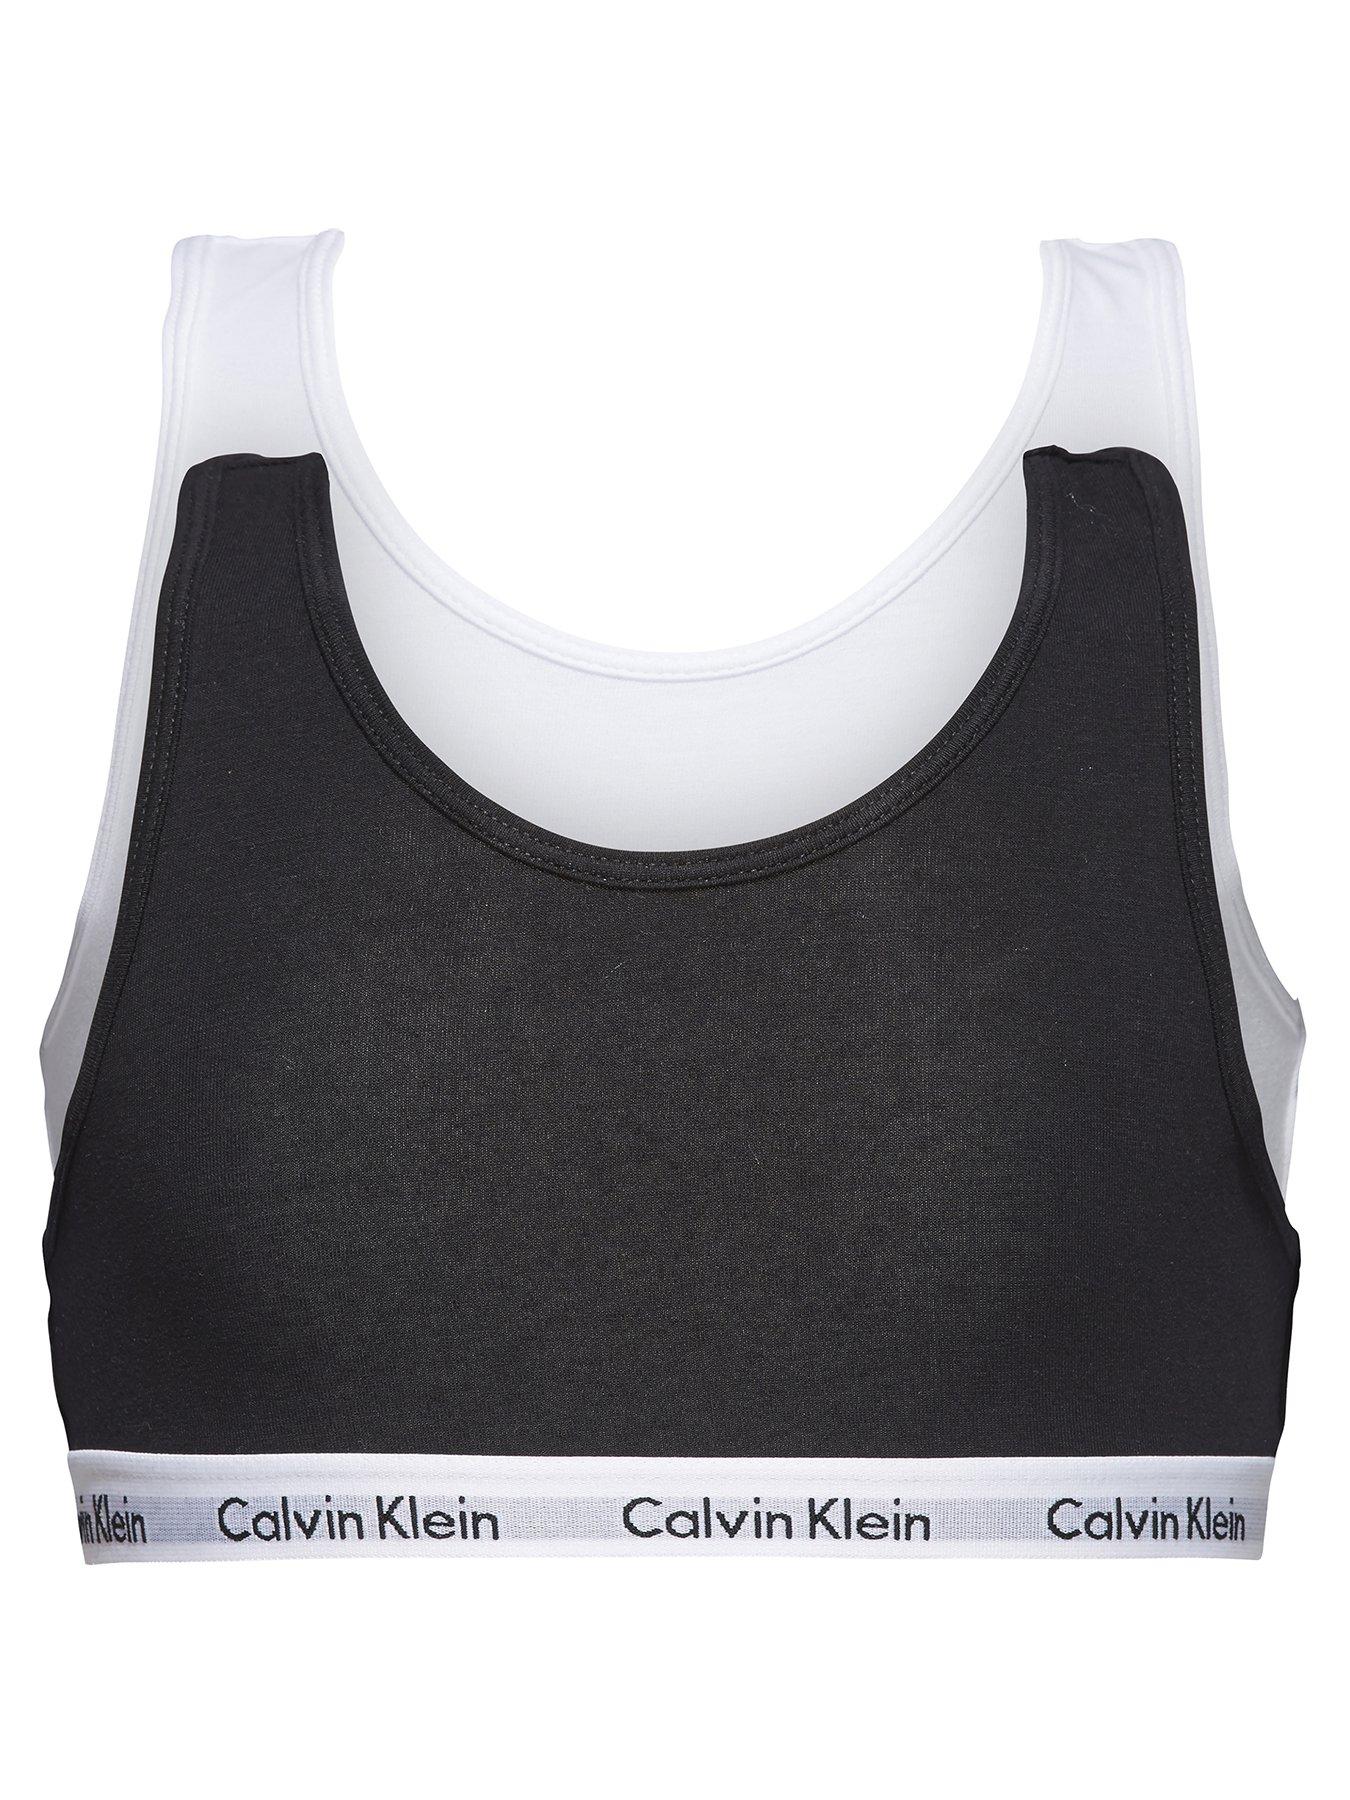 Calvin Klein Girls 2 Pack Bralettes - White/Black 